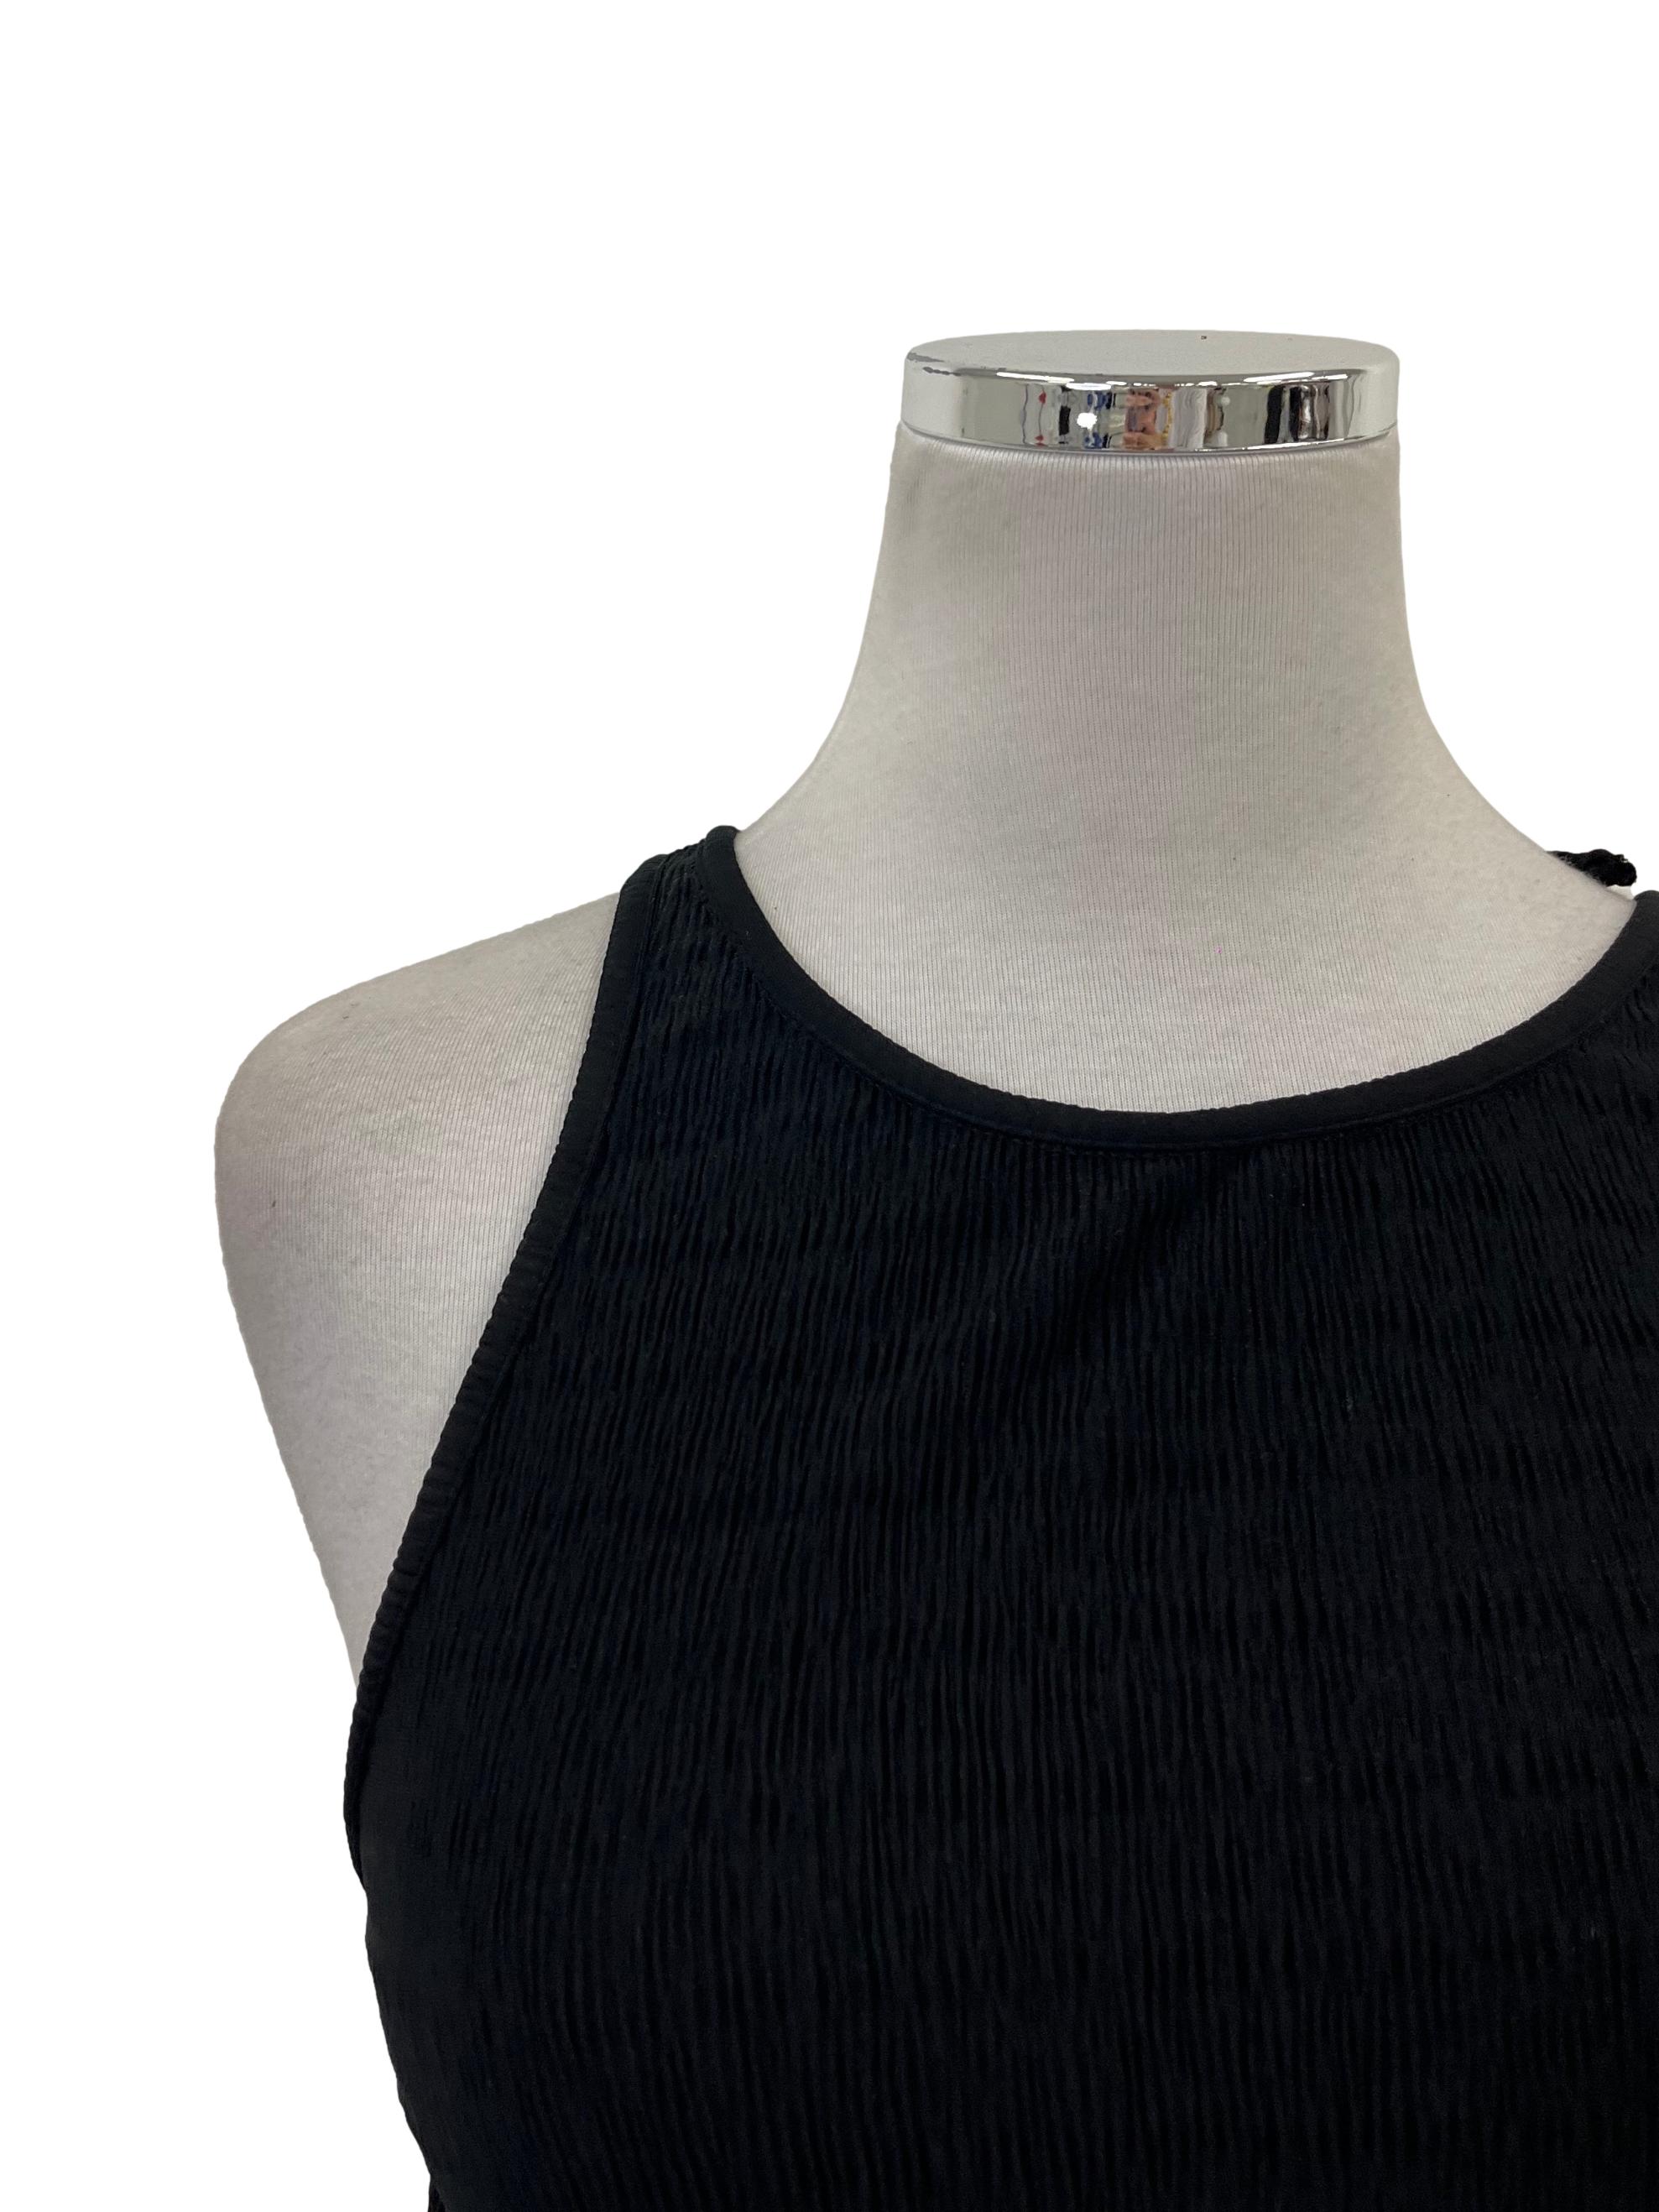 Black Textured Soft A-line Dress